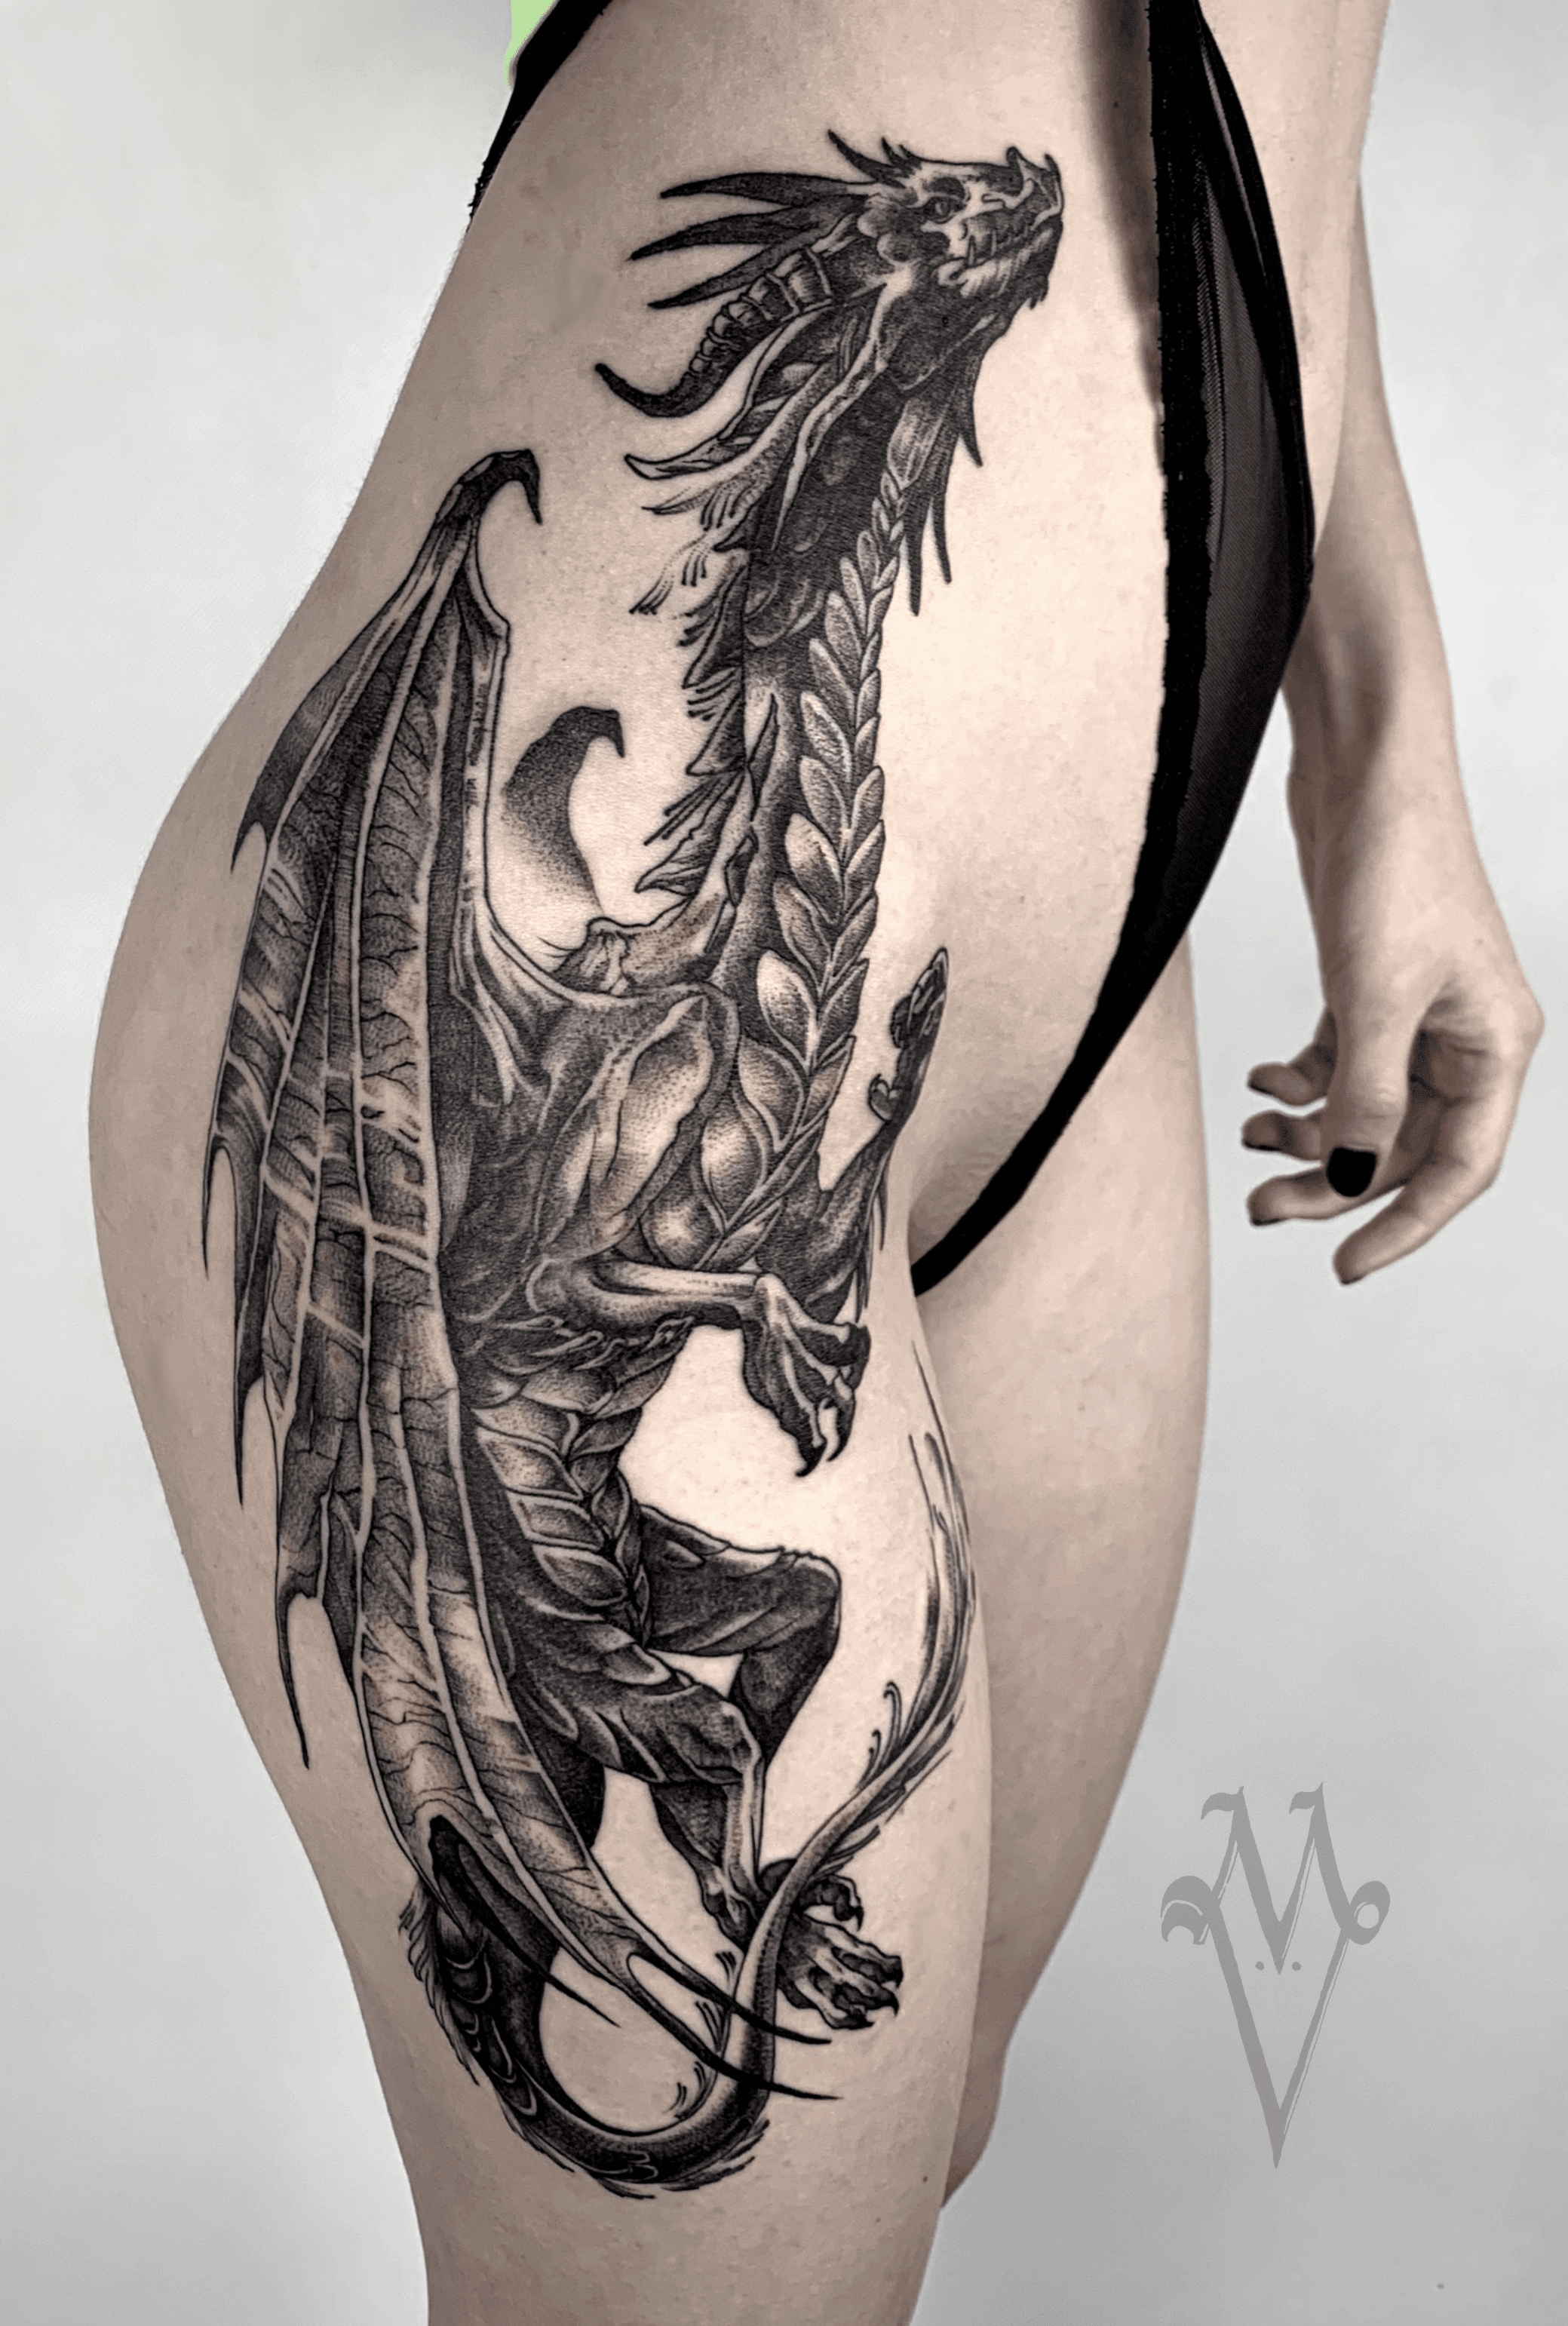 Dragon tattoo, thigh tattoo, whipshading.